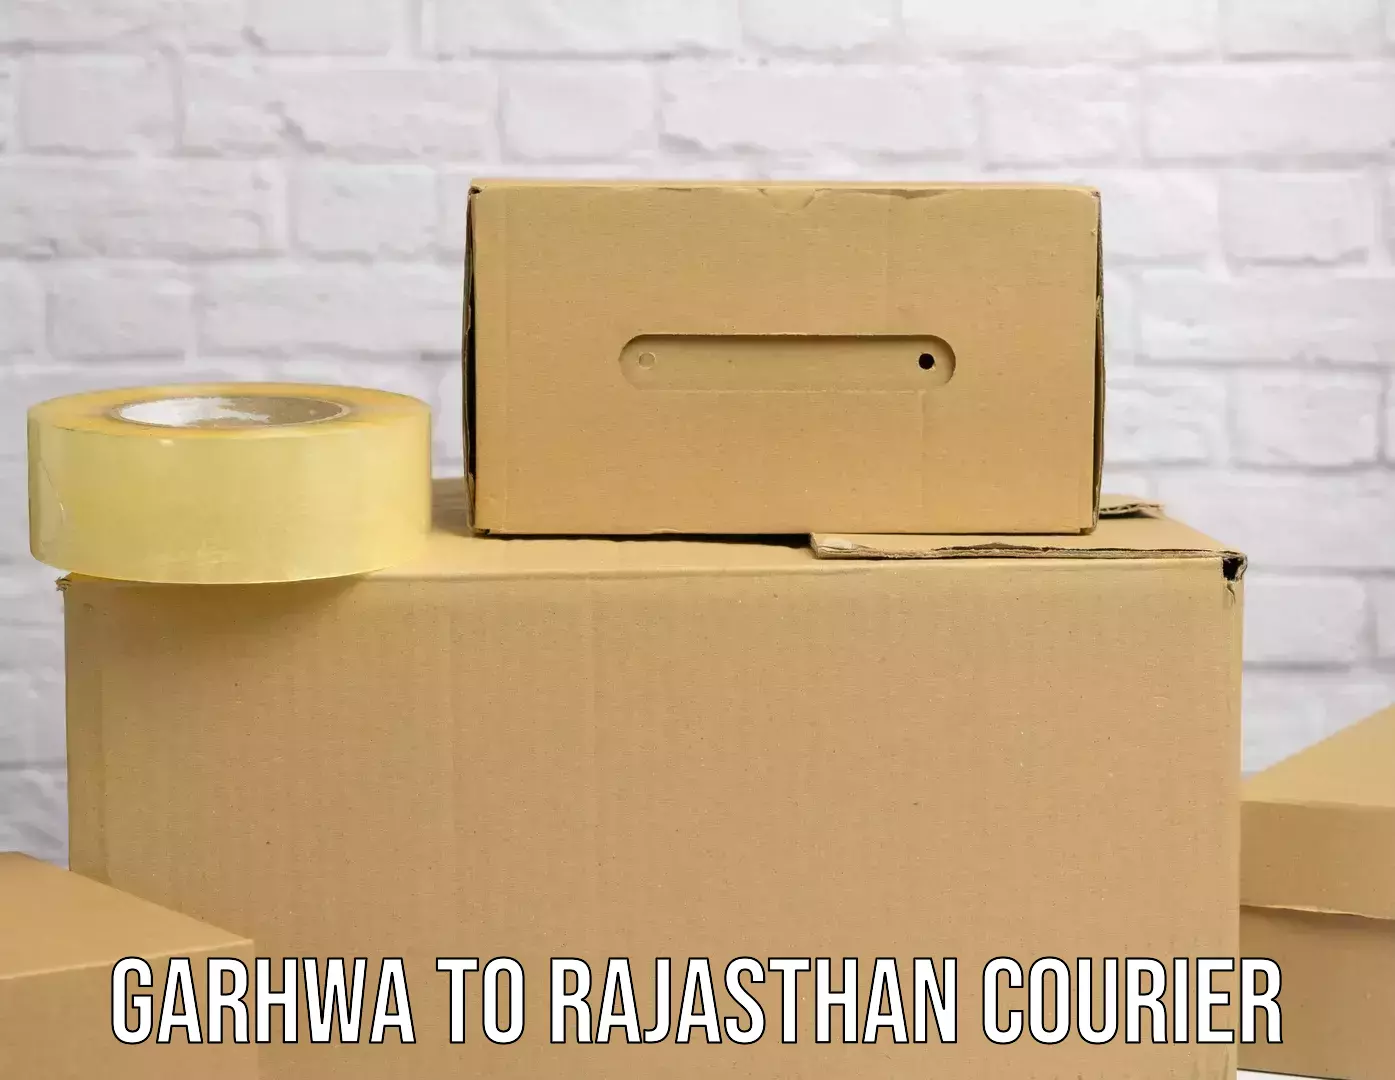 Affordable parcel service Garhwa to Nagaur